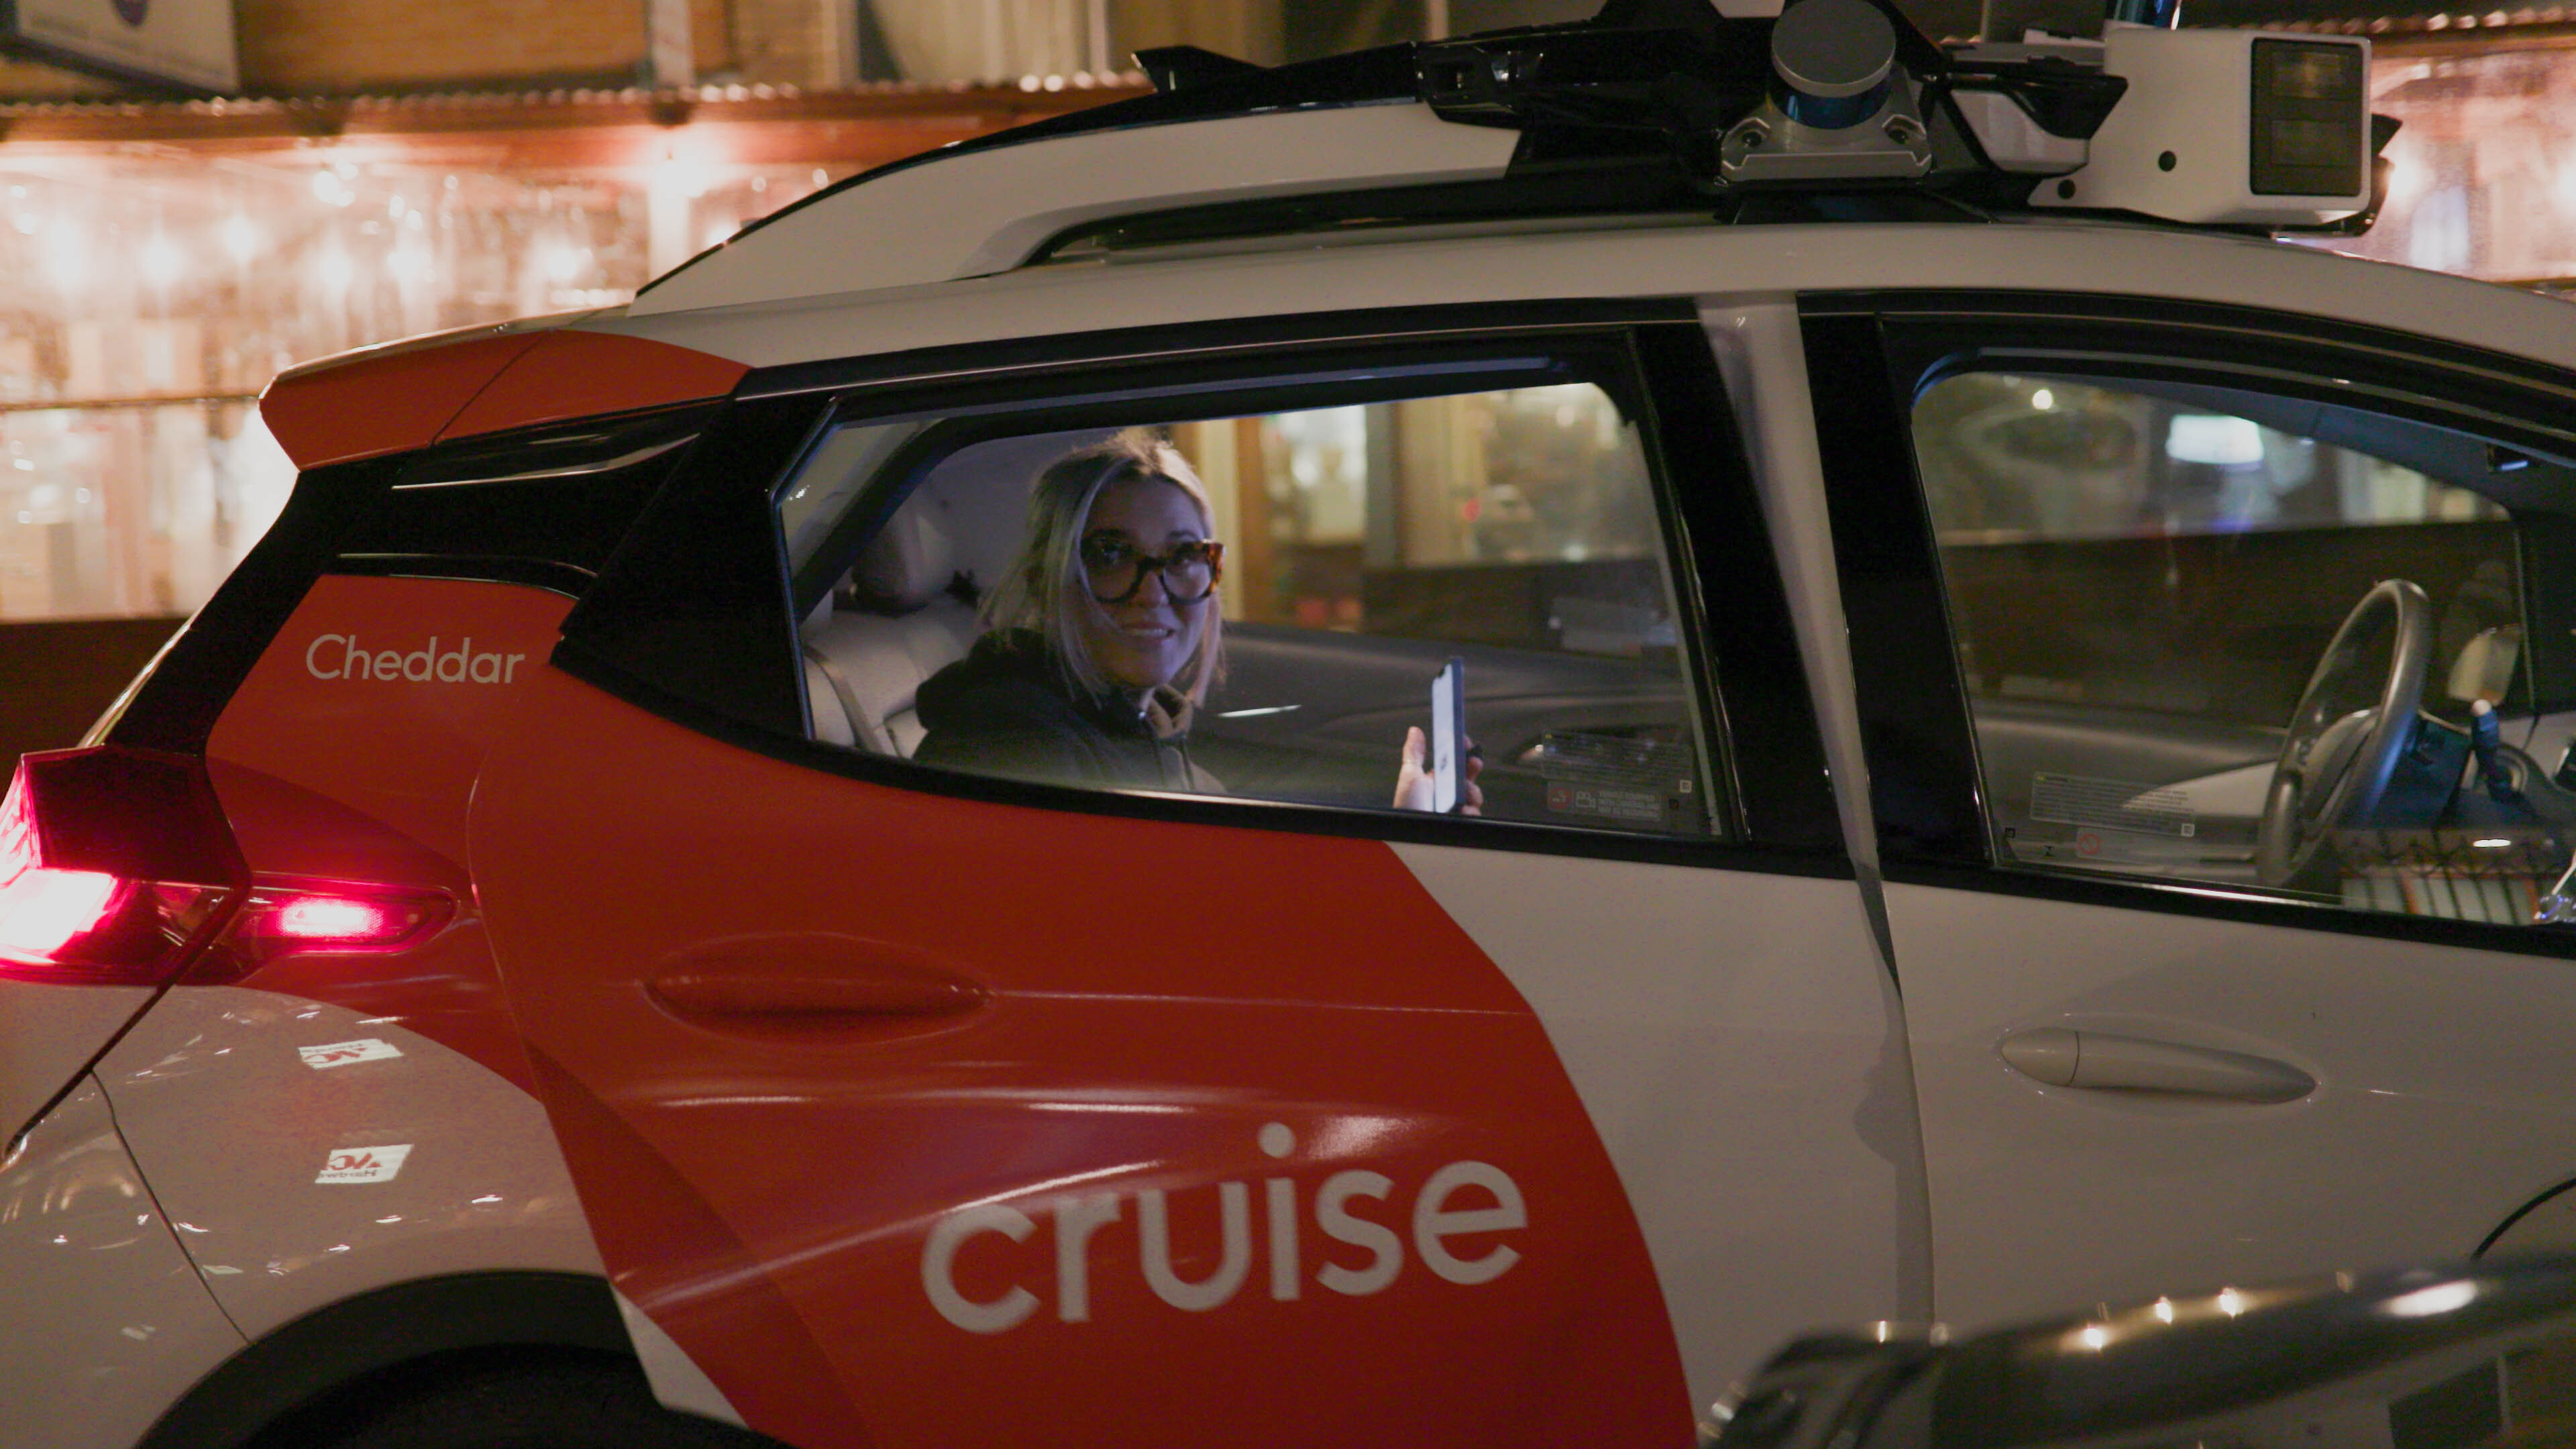 cruise driverless car app